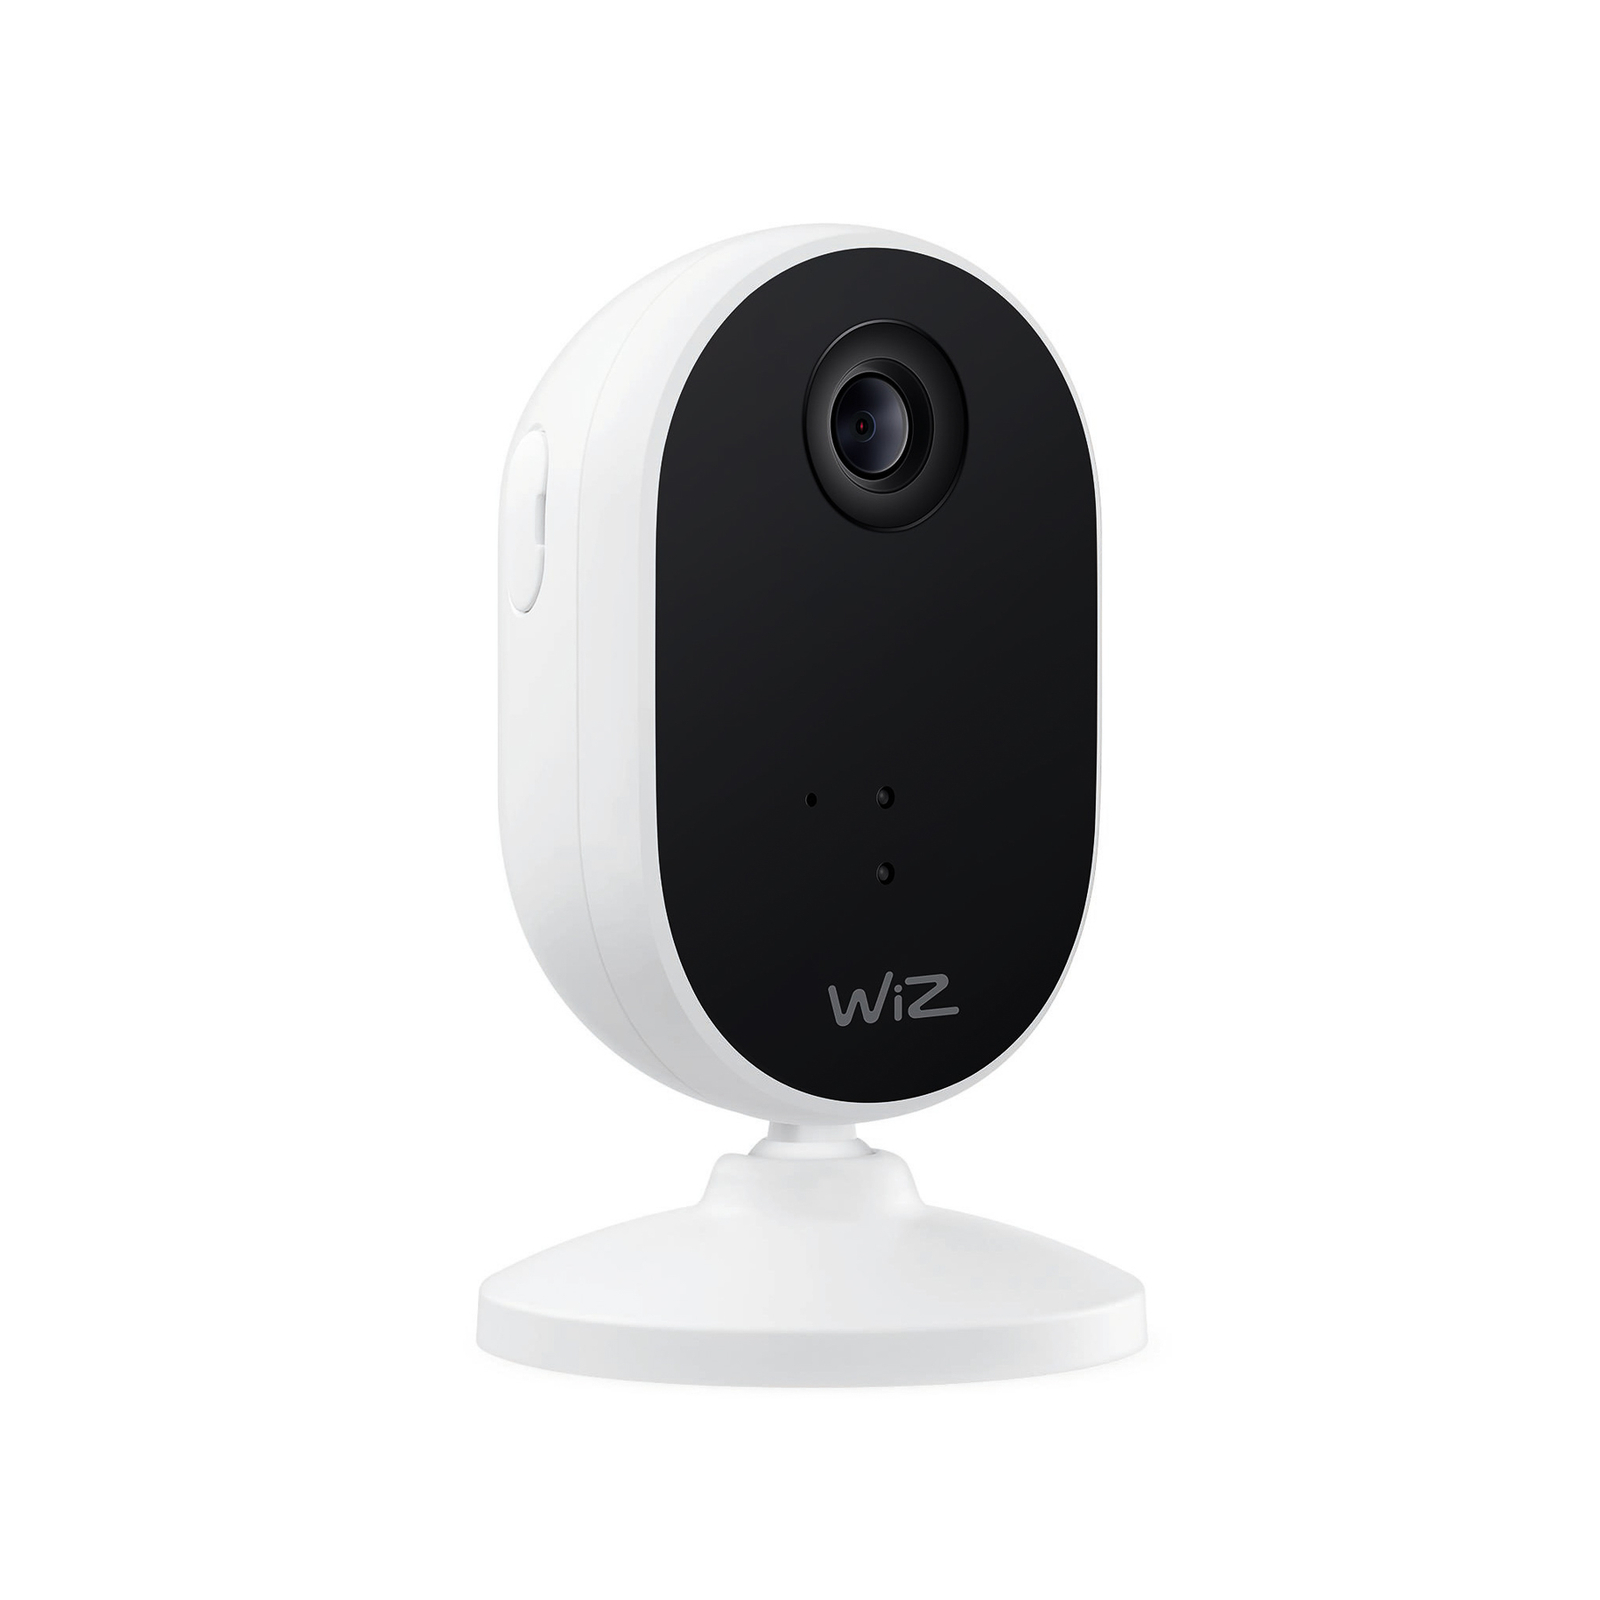 WiZ unutarnja sigurnosna kamera s Wi-Fi mrežom